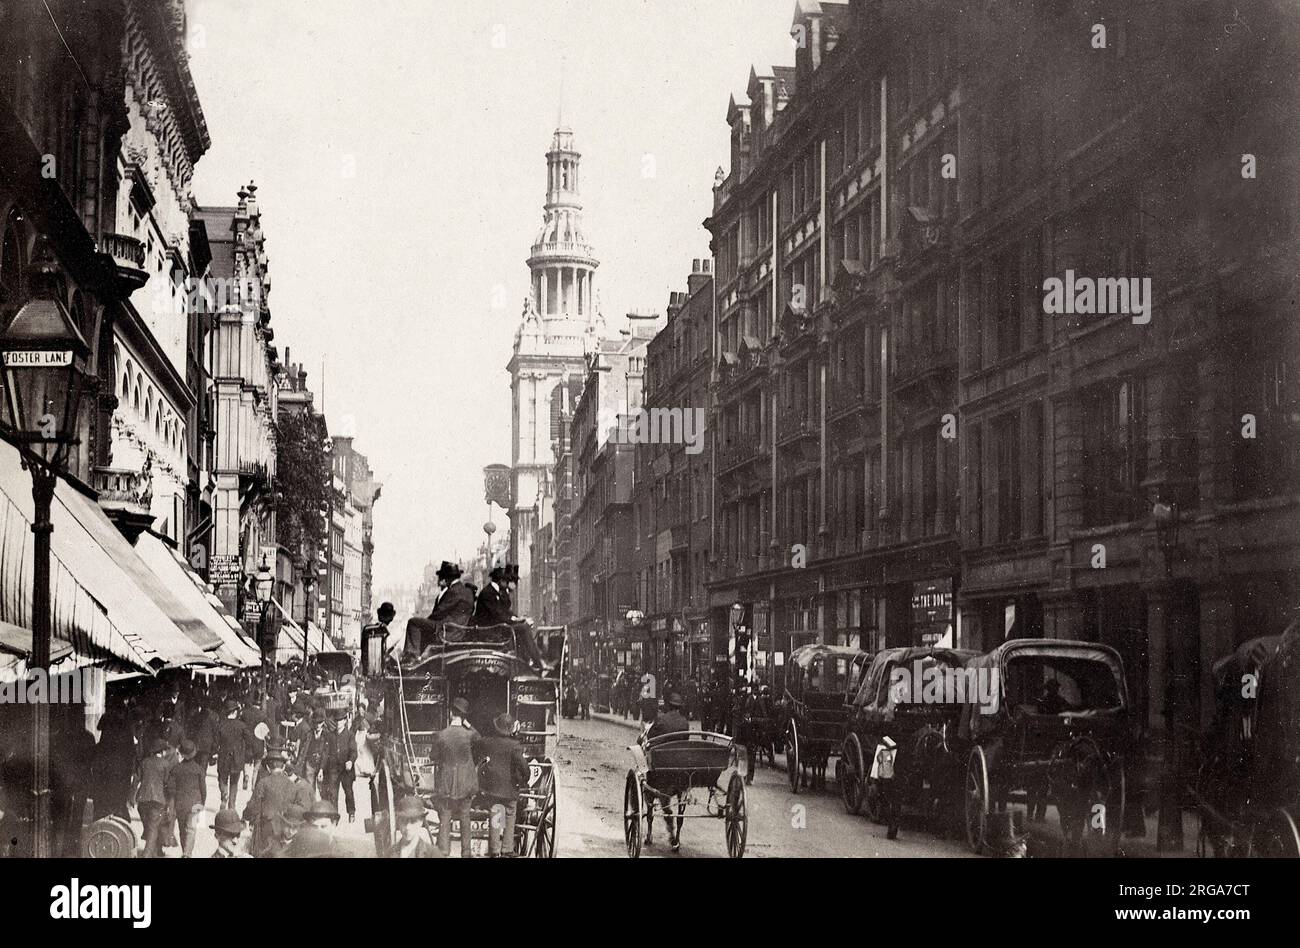 Photographie vintage du 19th siècle : scène de rue animée, Cheapside, Londres Banque D'Images